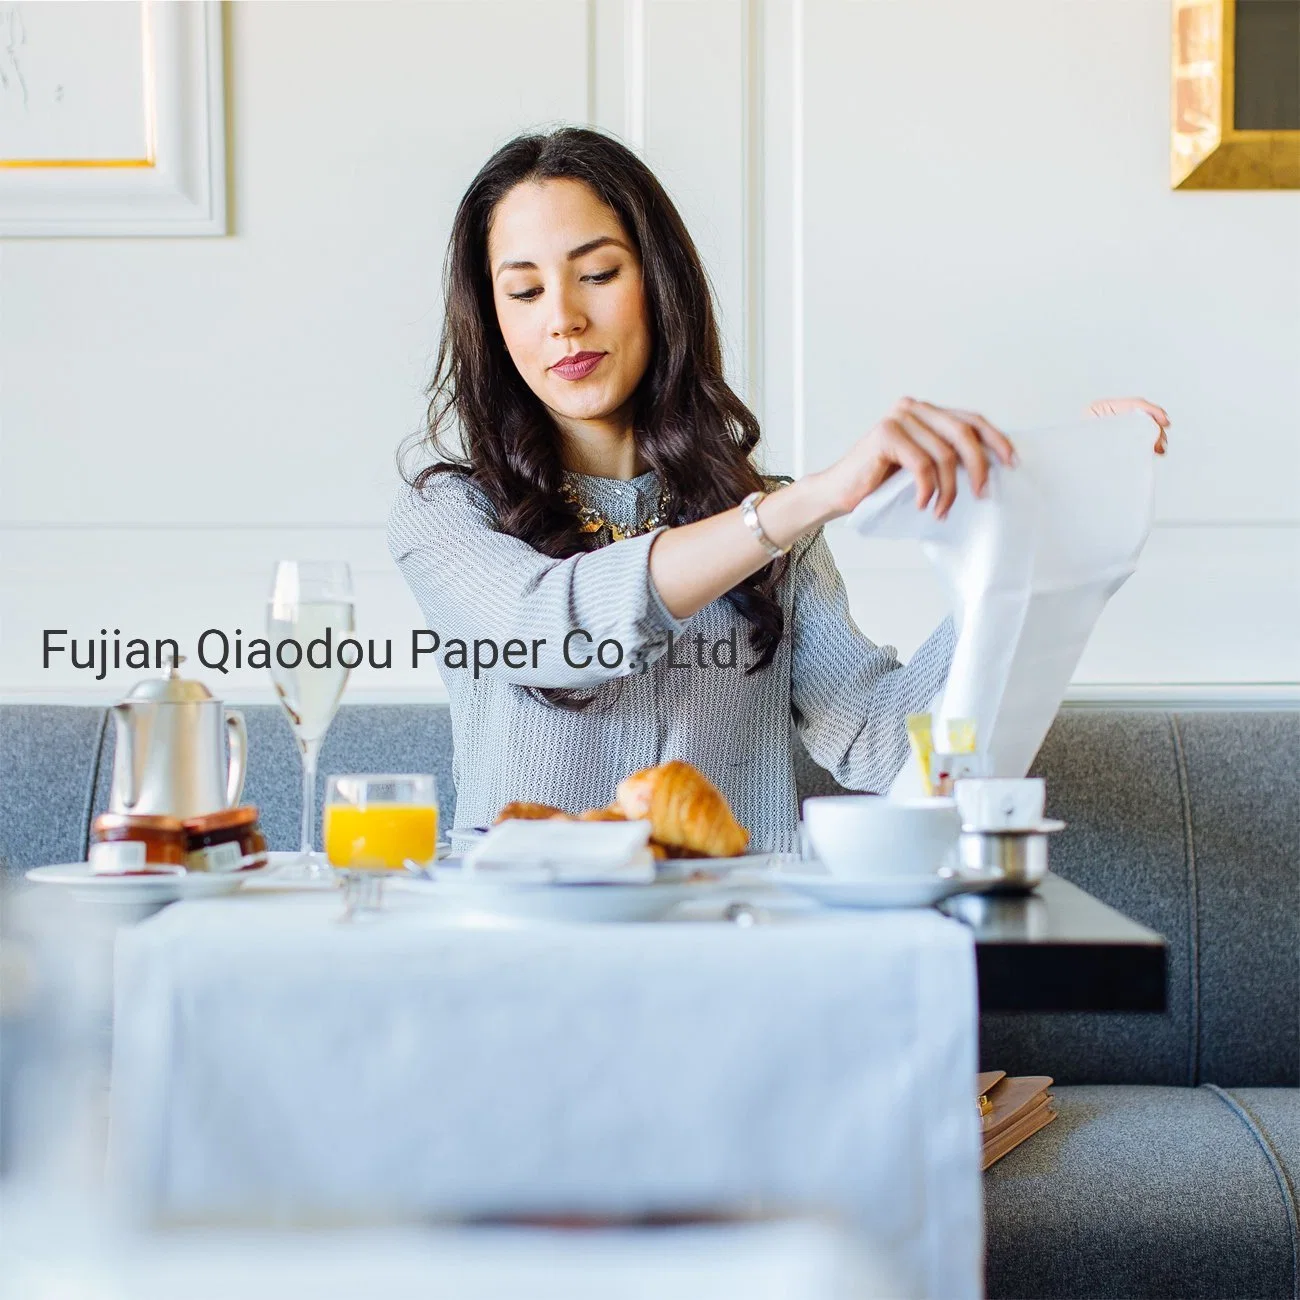 Qiaodou Einweg Tuch-Gefühl Tissue Paper, Hand Servietten, weiß, Packung mit 100 Stück